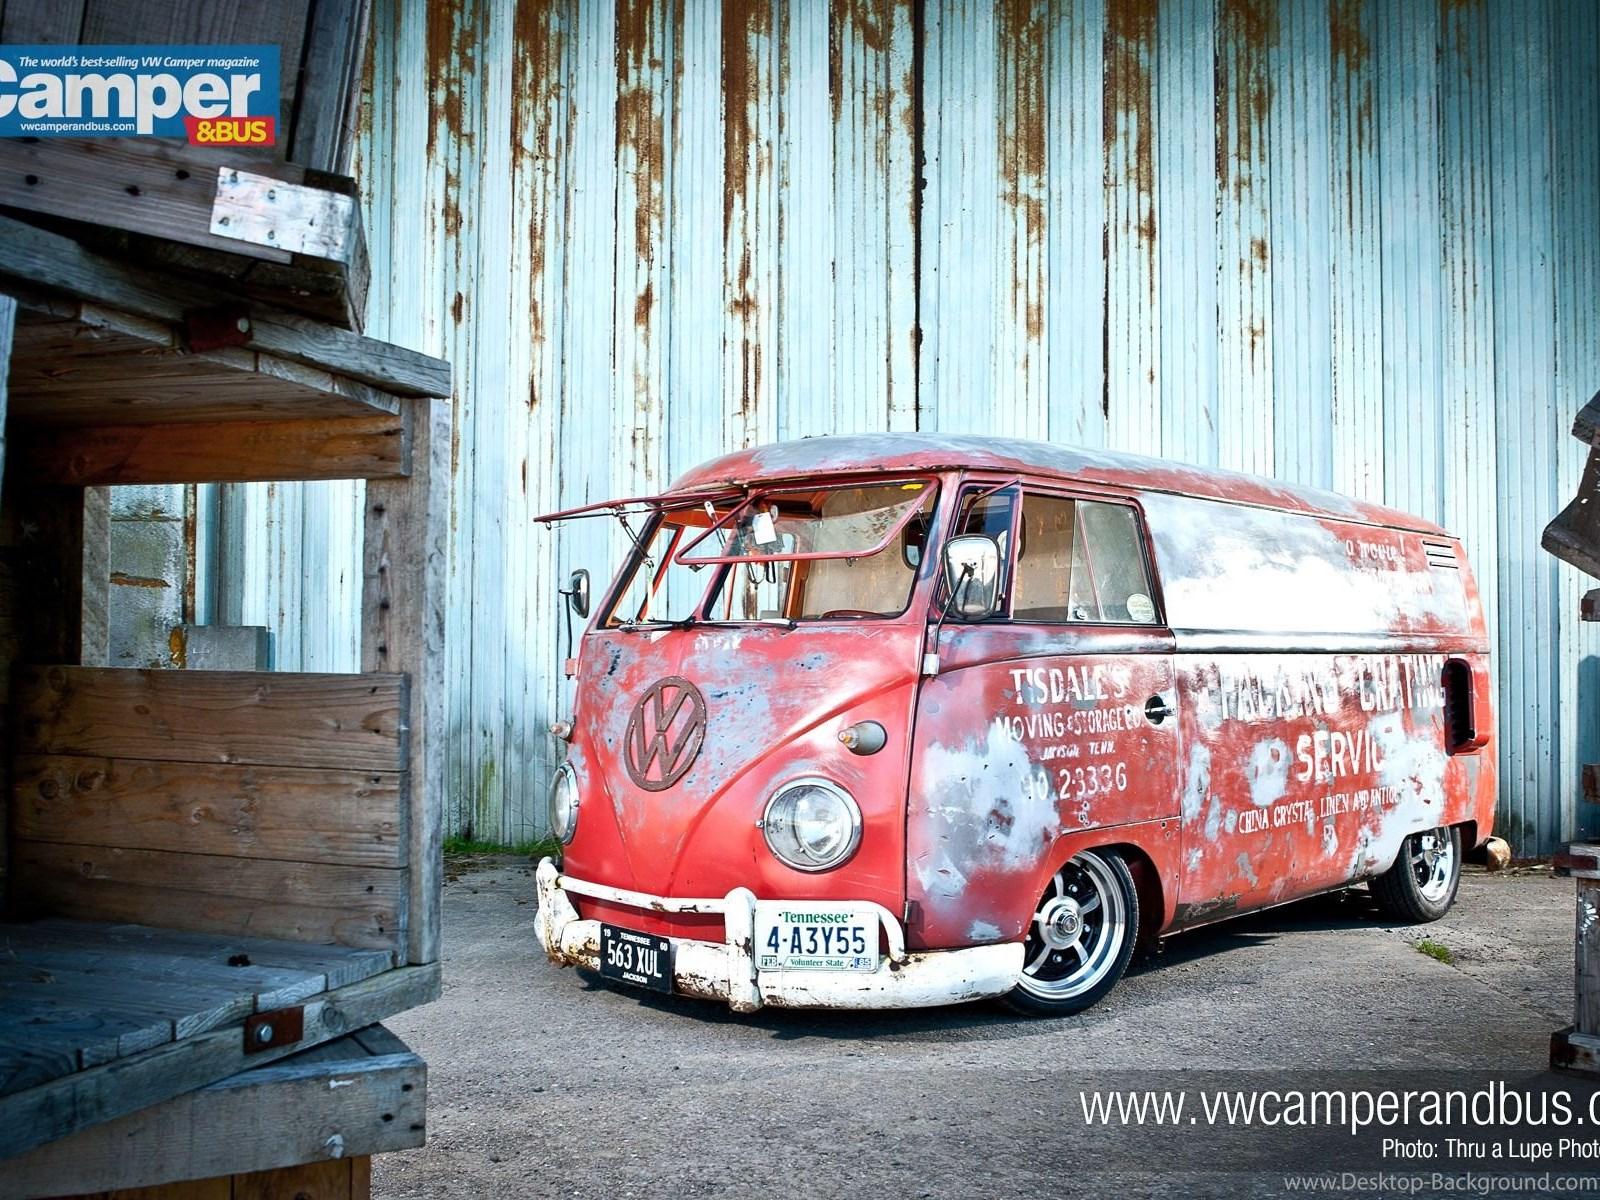 New Batch Of Camper Wallpaper To Download VW Camper And Bus Desktop